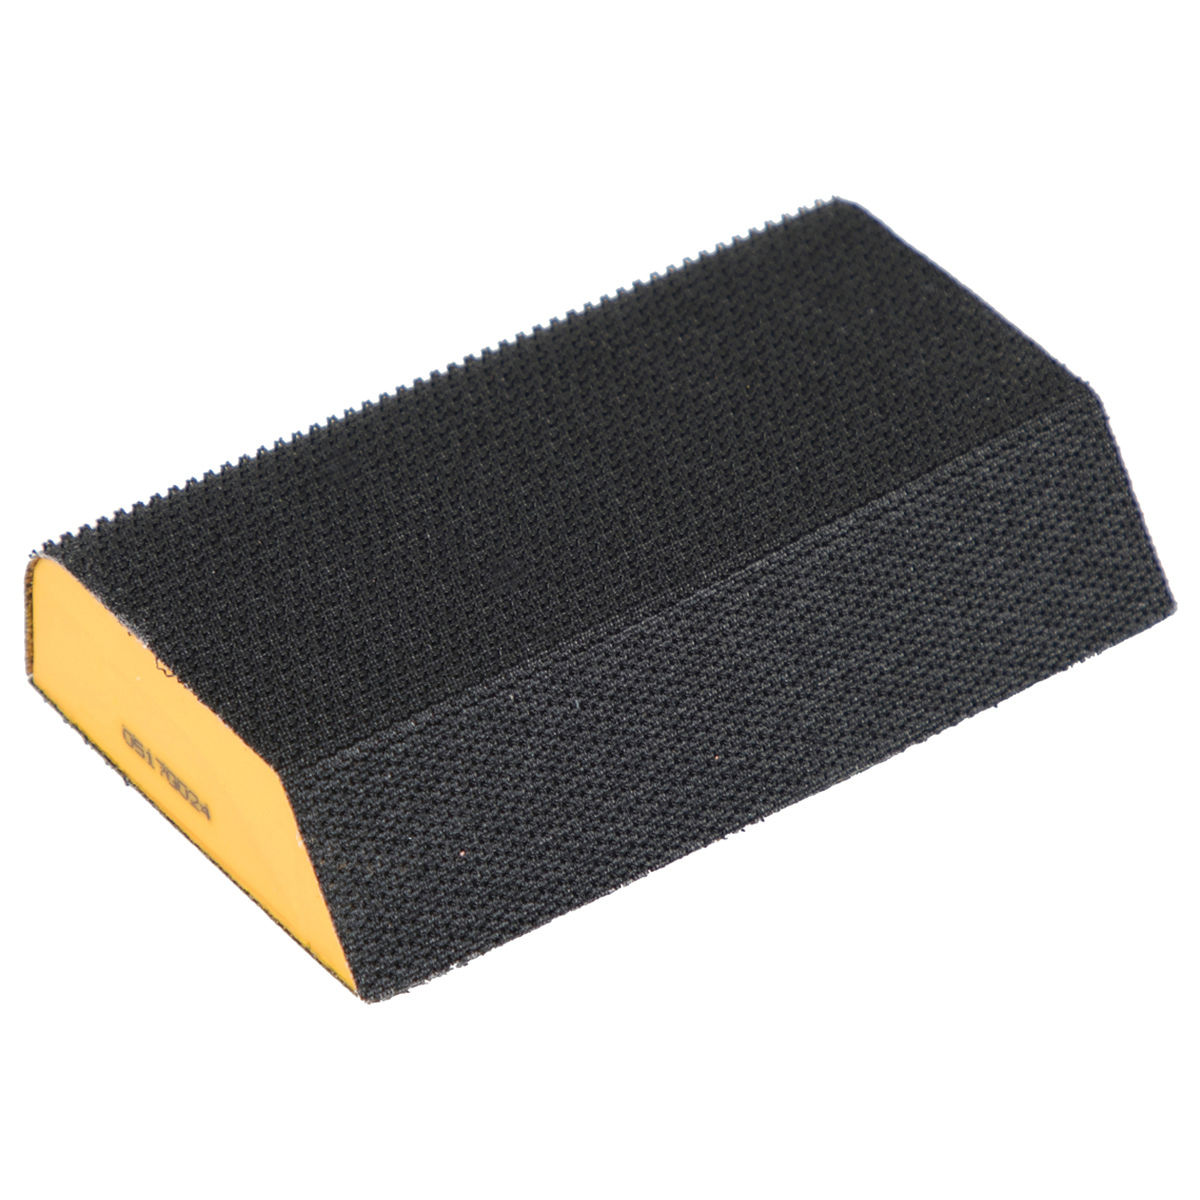 Sanding Sponge Block 110 x 68 mm Grip